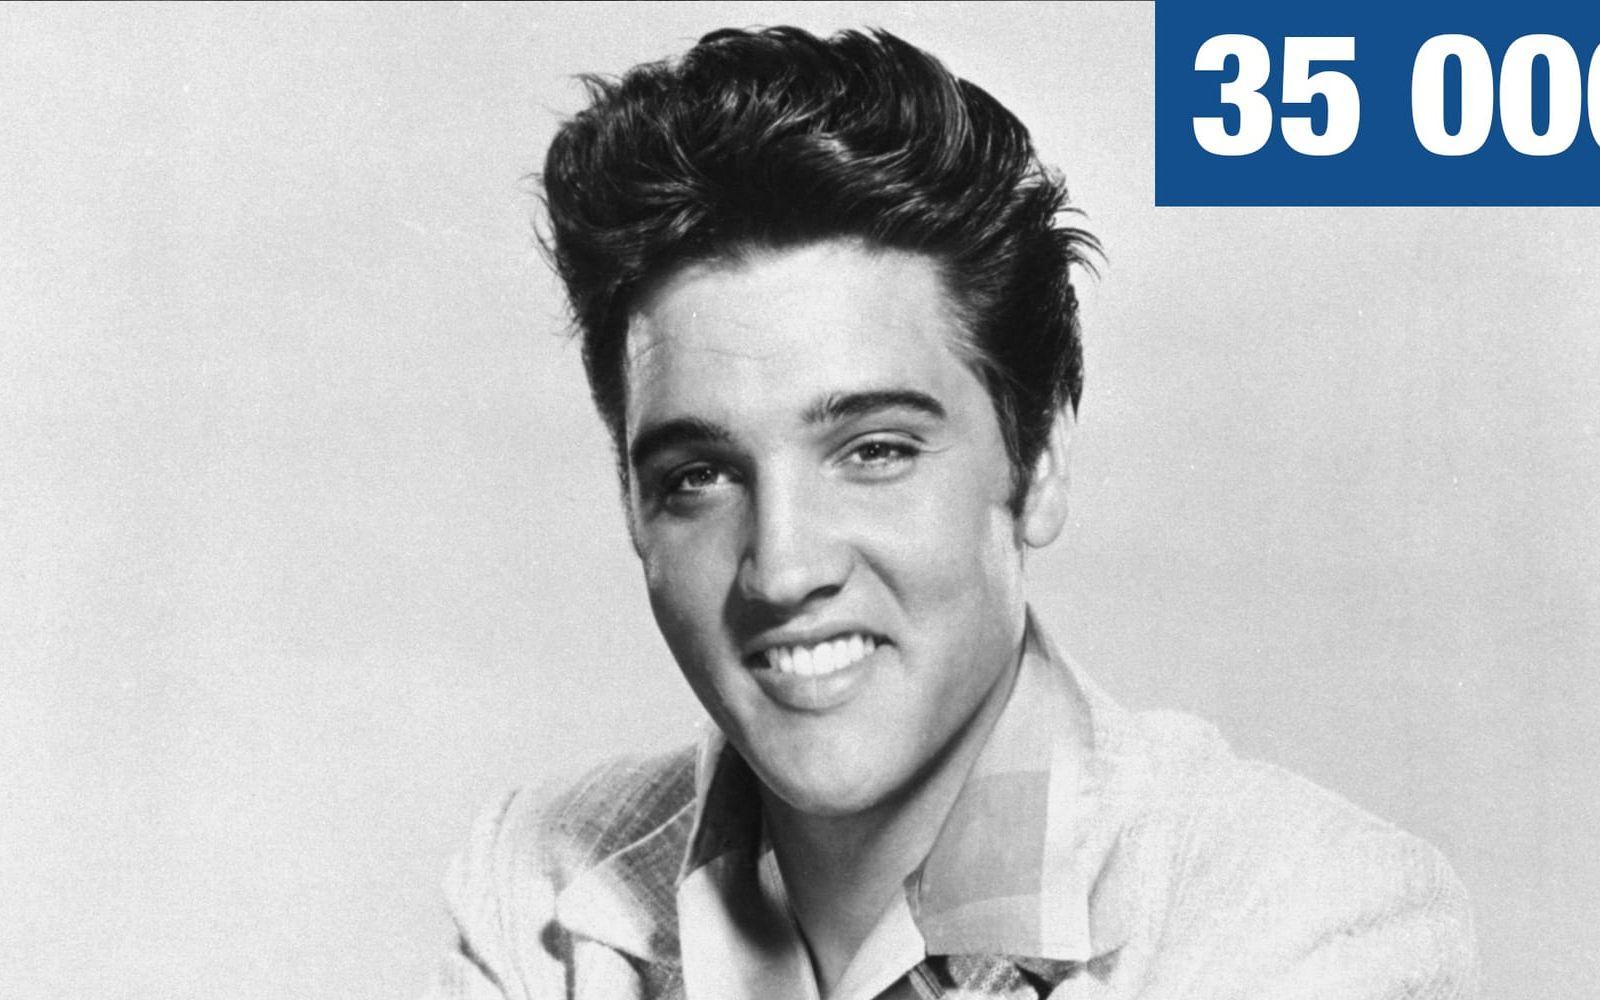 35 000. Priset i dollar som Sun Records begärde när de sålde rättigheterna till Elvis kontrakt 1955, efter att hans första singlar sålt under förväntan. Foto: TT